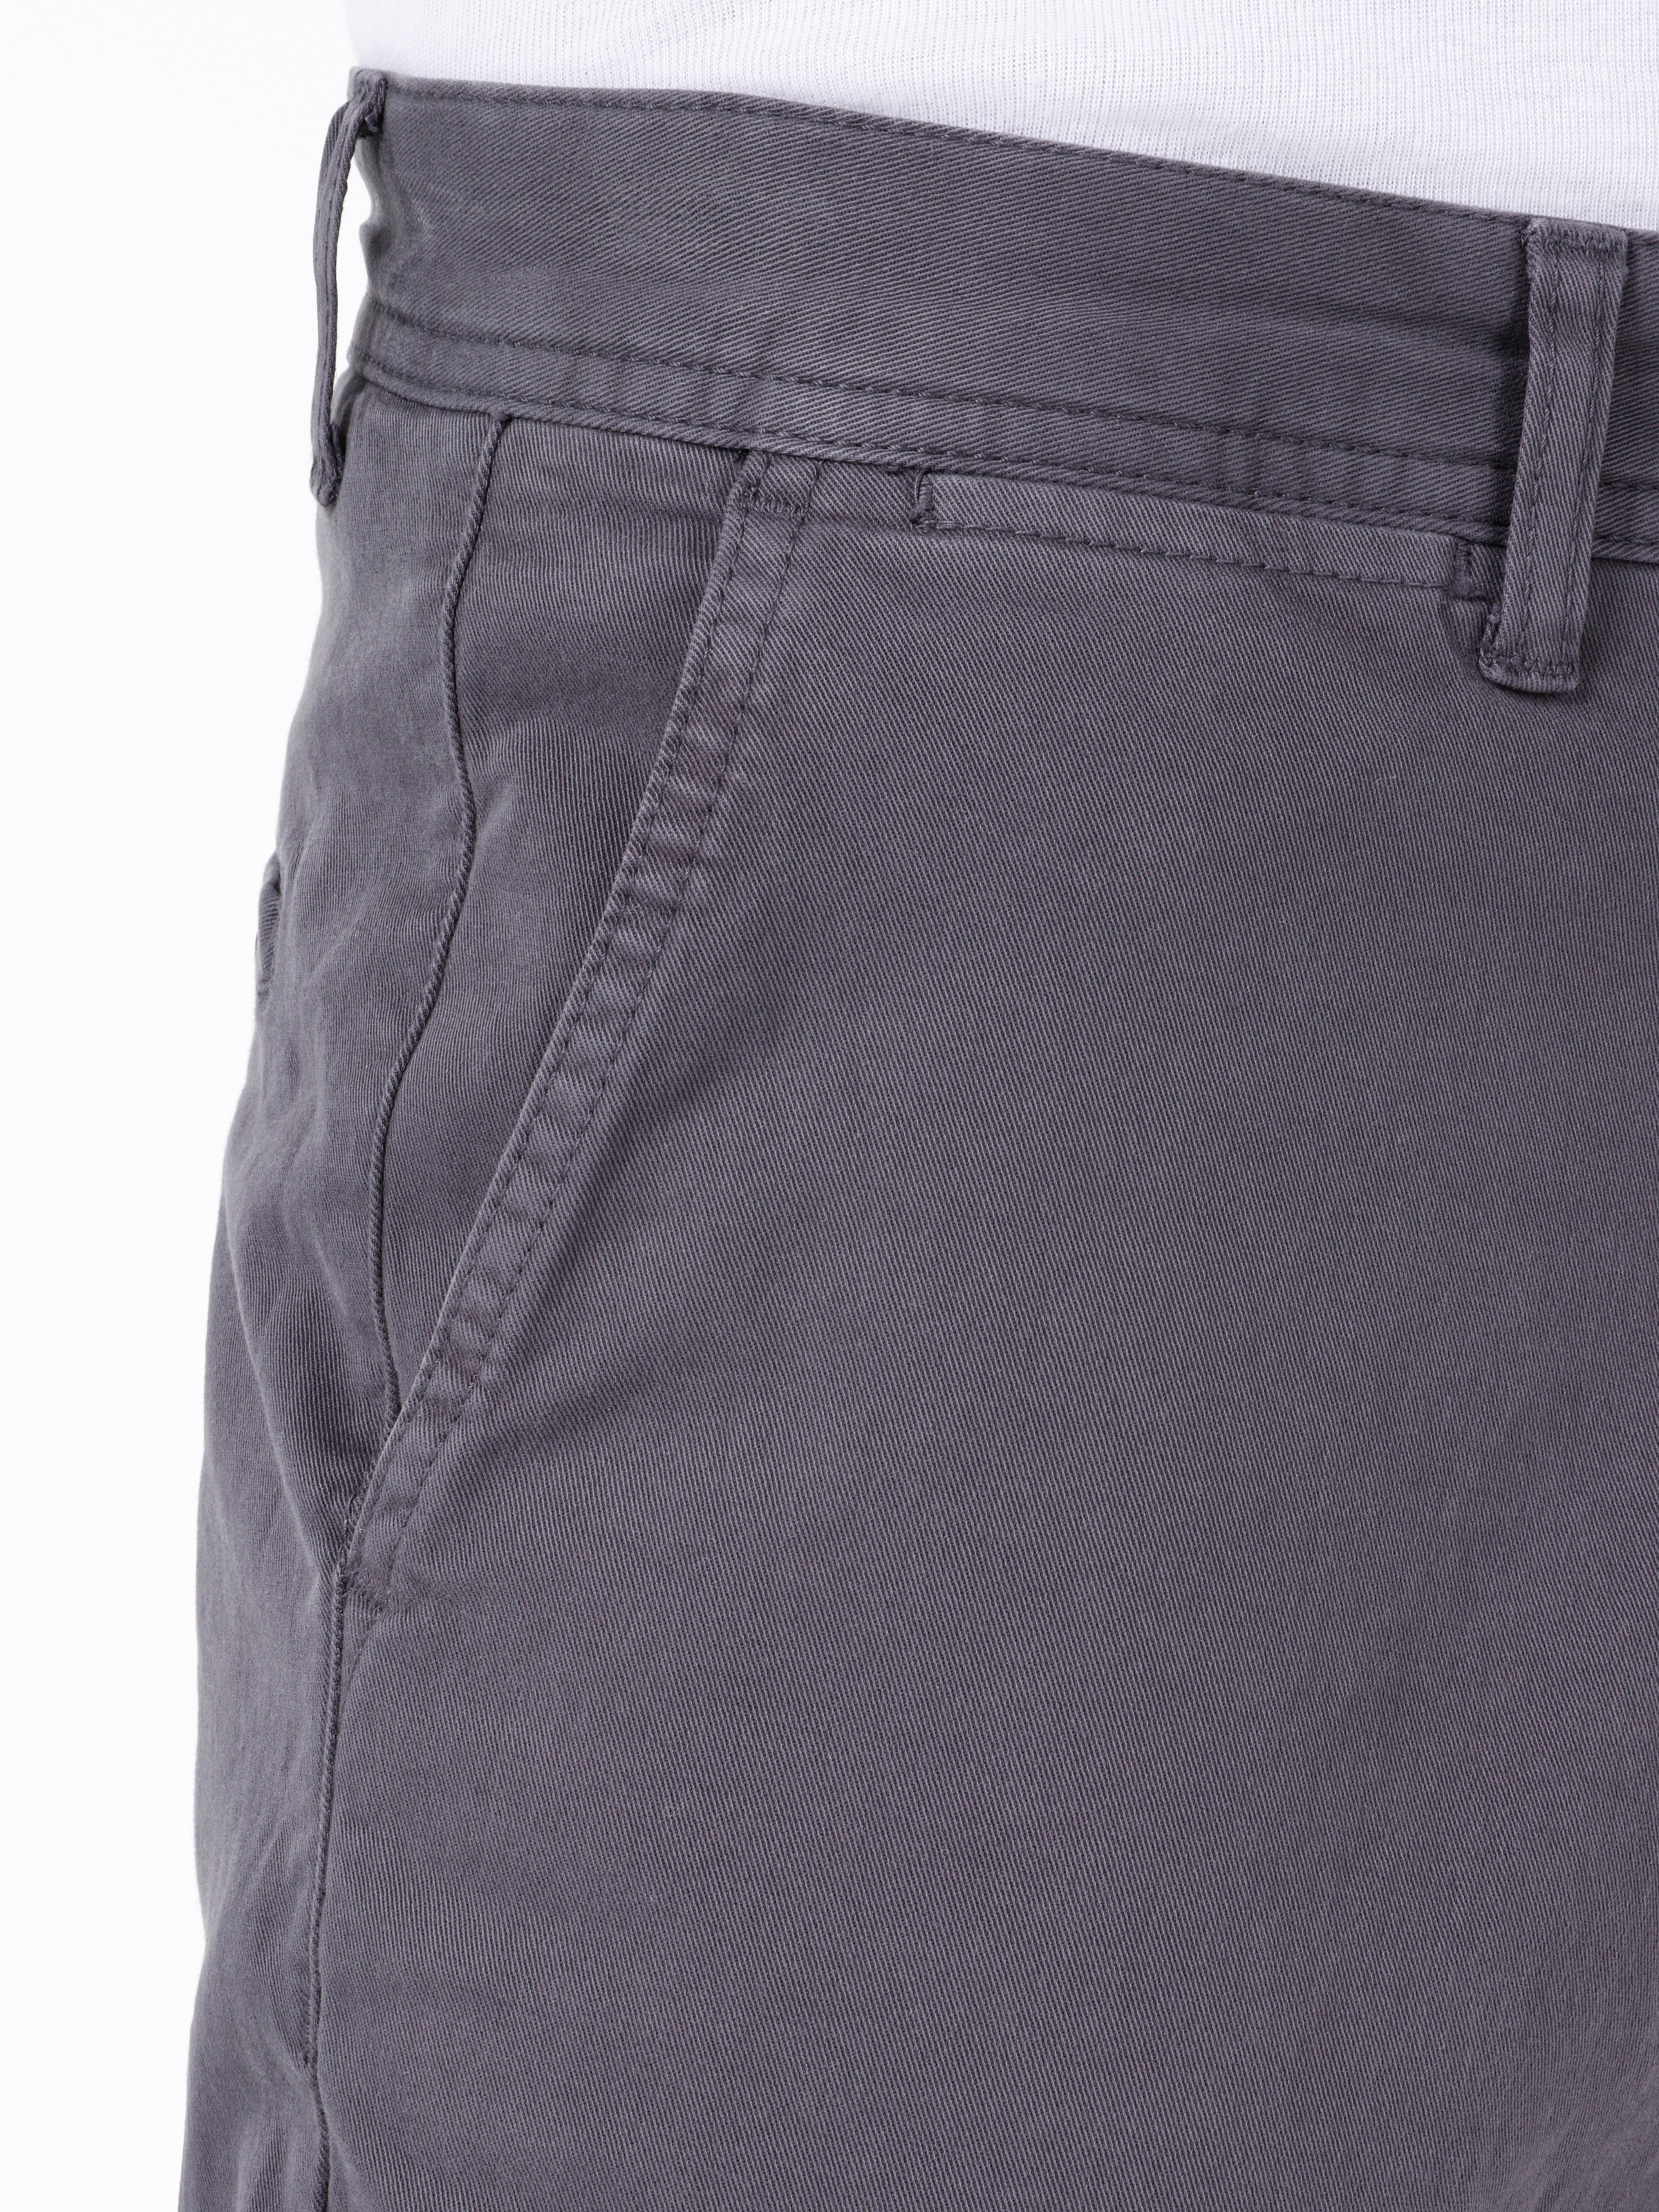 Afficher les détails de Pantalon Homme Gris Foncé Coupe Regular Taille Moyenne Coupe Normale Jambe Droite